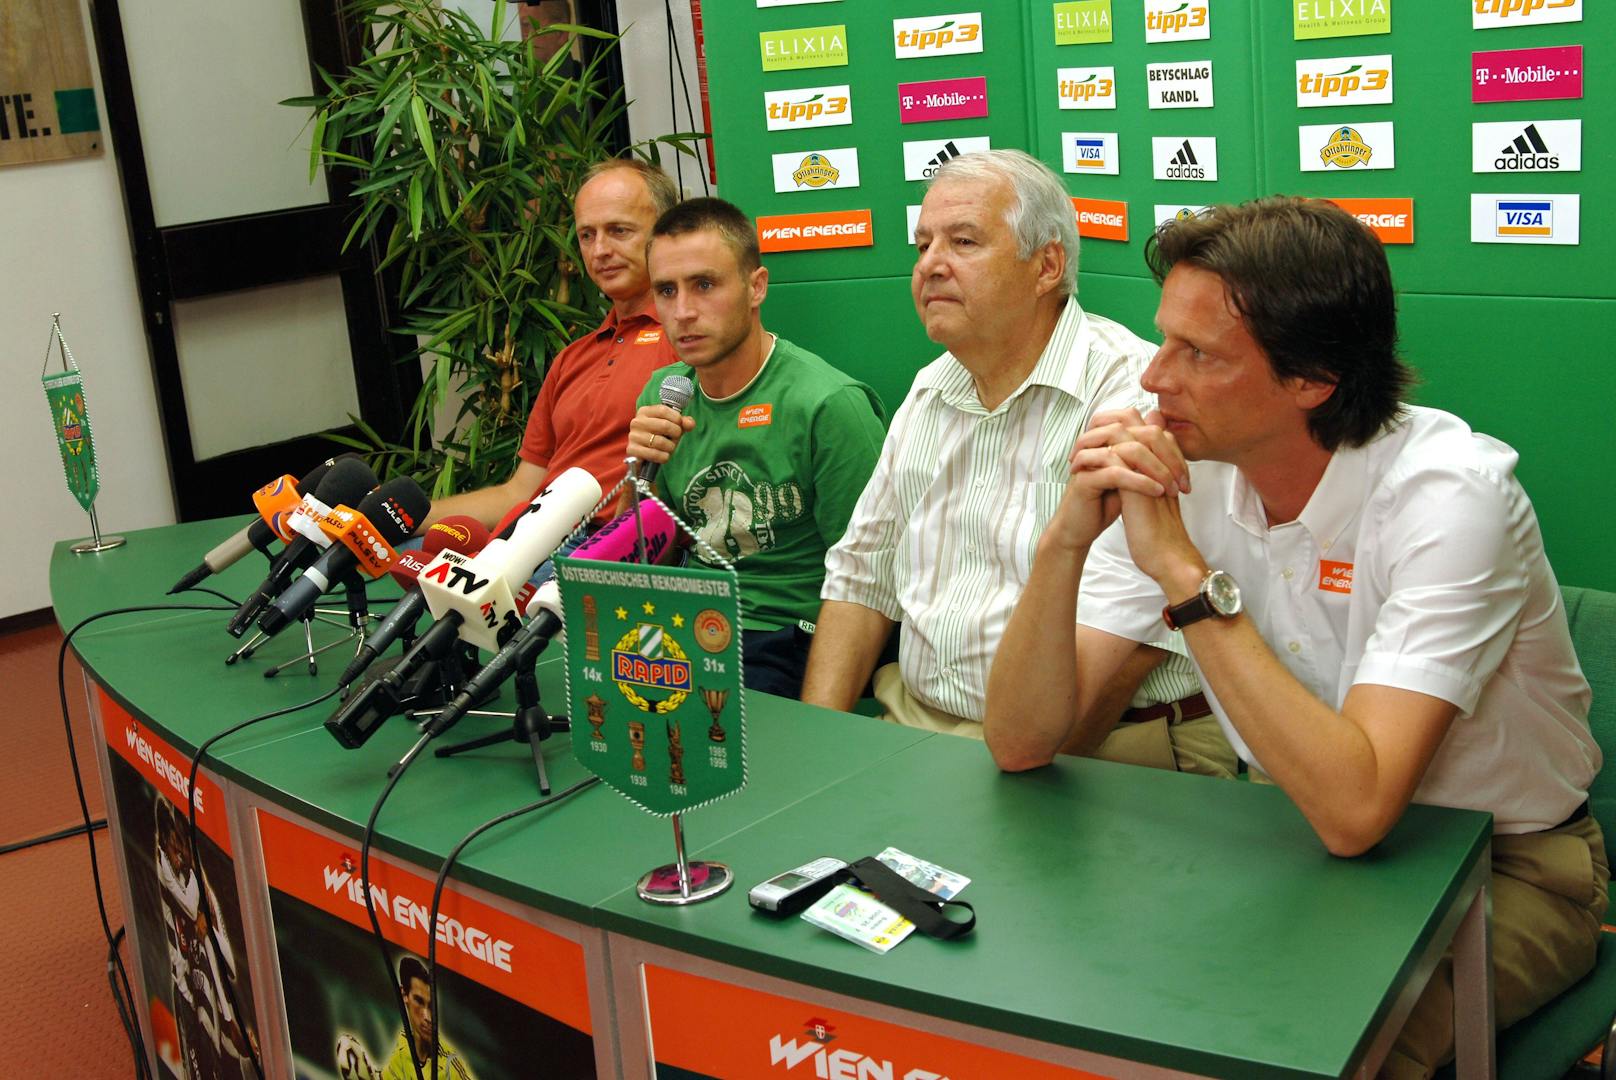 2006: "Rudi Edlinger hat mich von 1860 München zurückgeholt. Richtungsweisend für mein weiteres Leben."